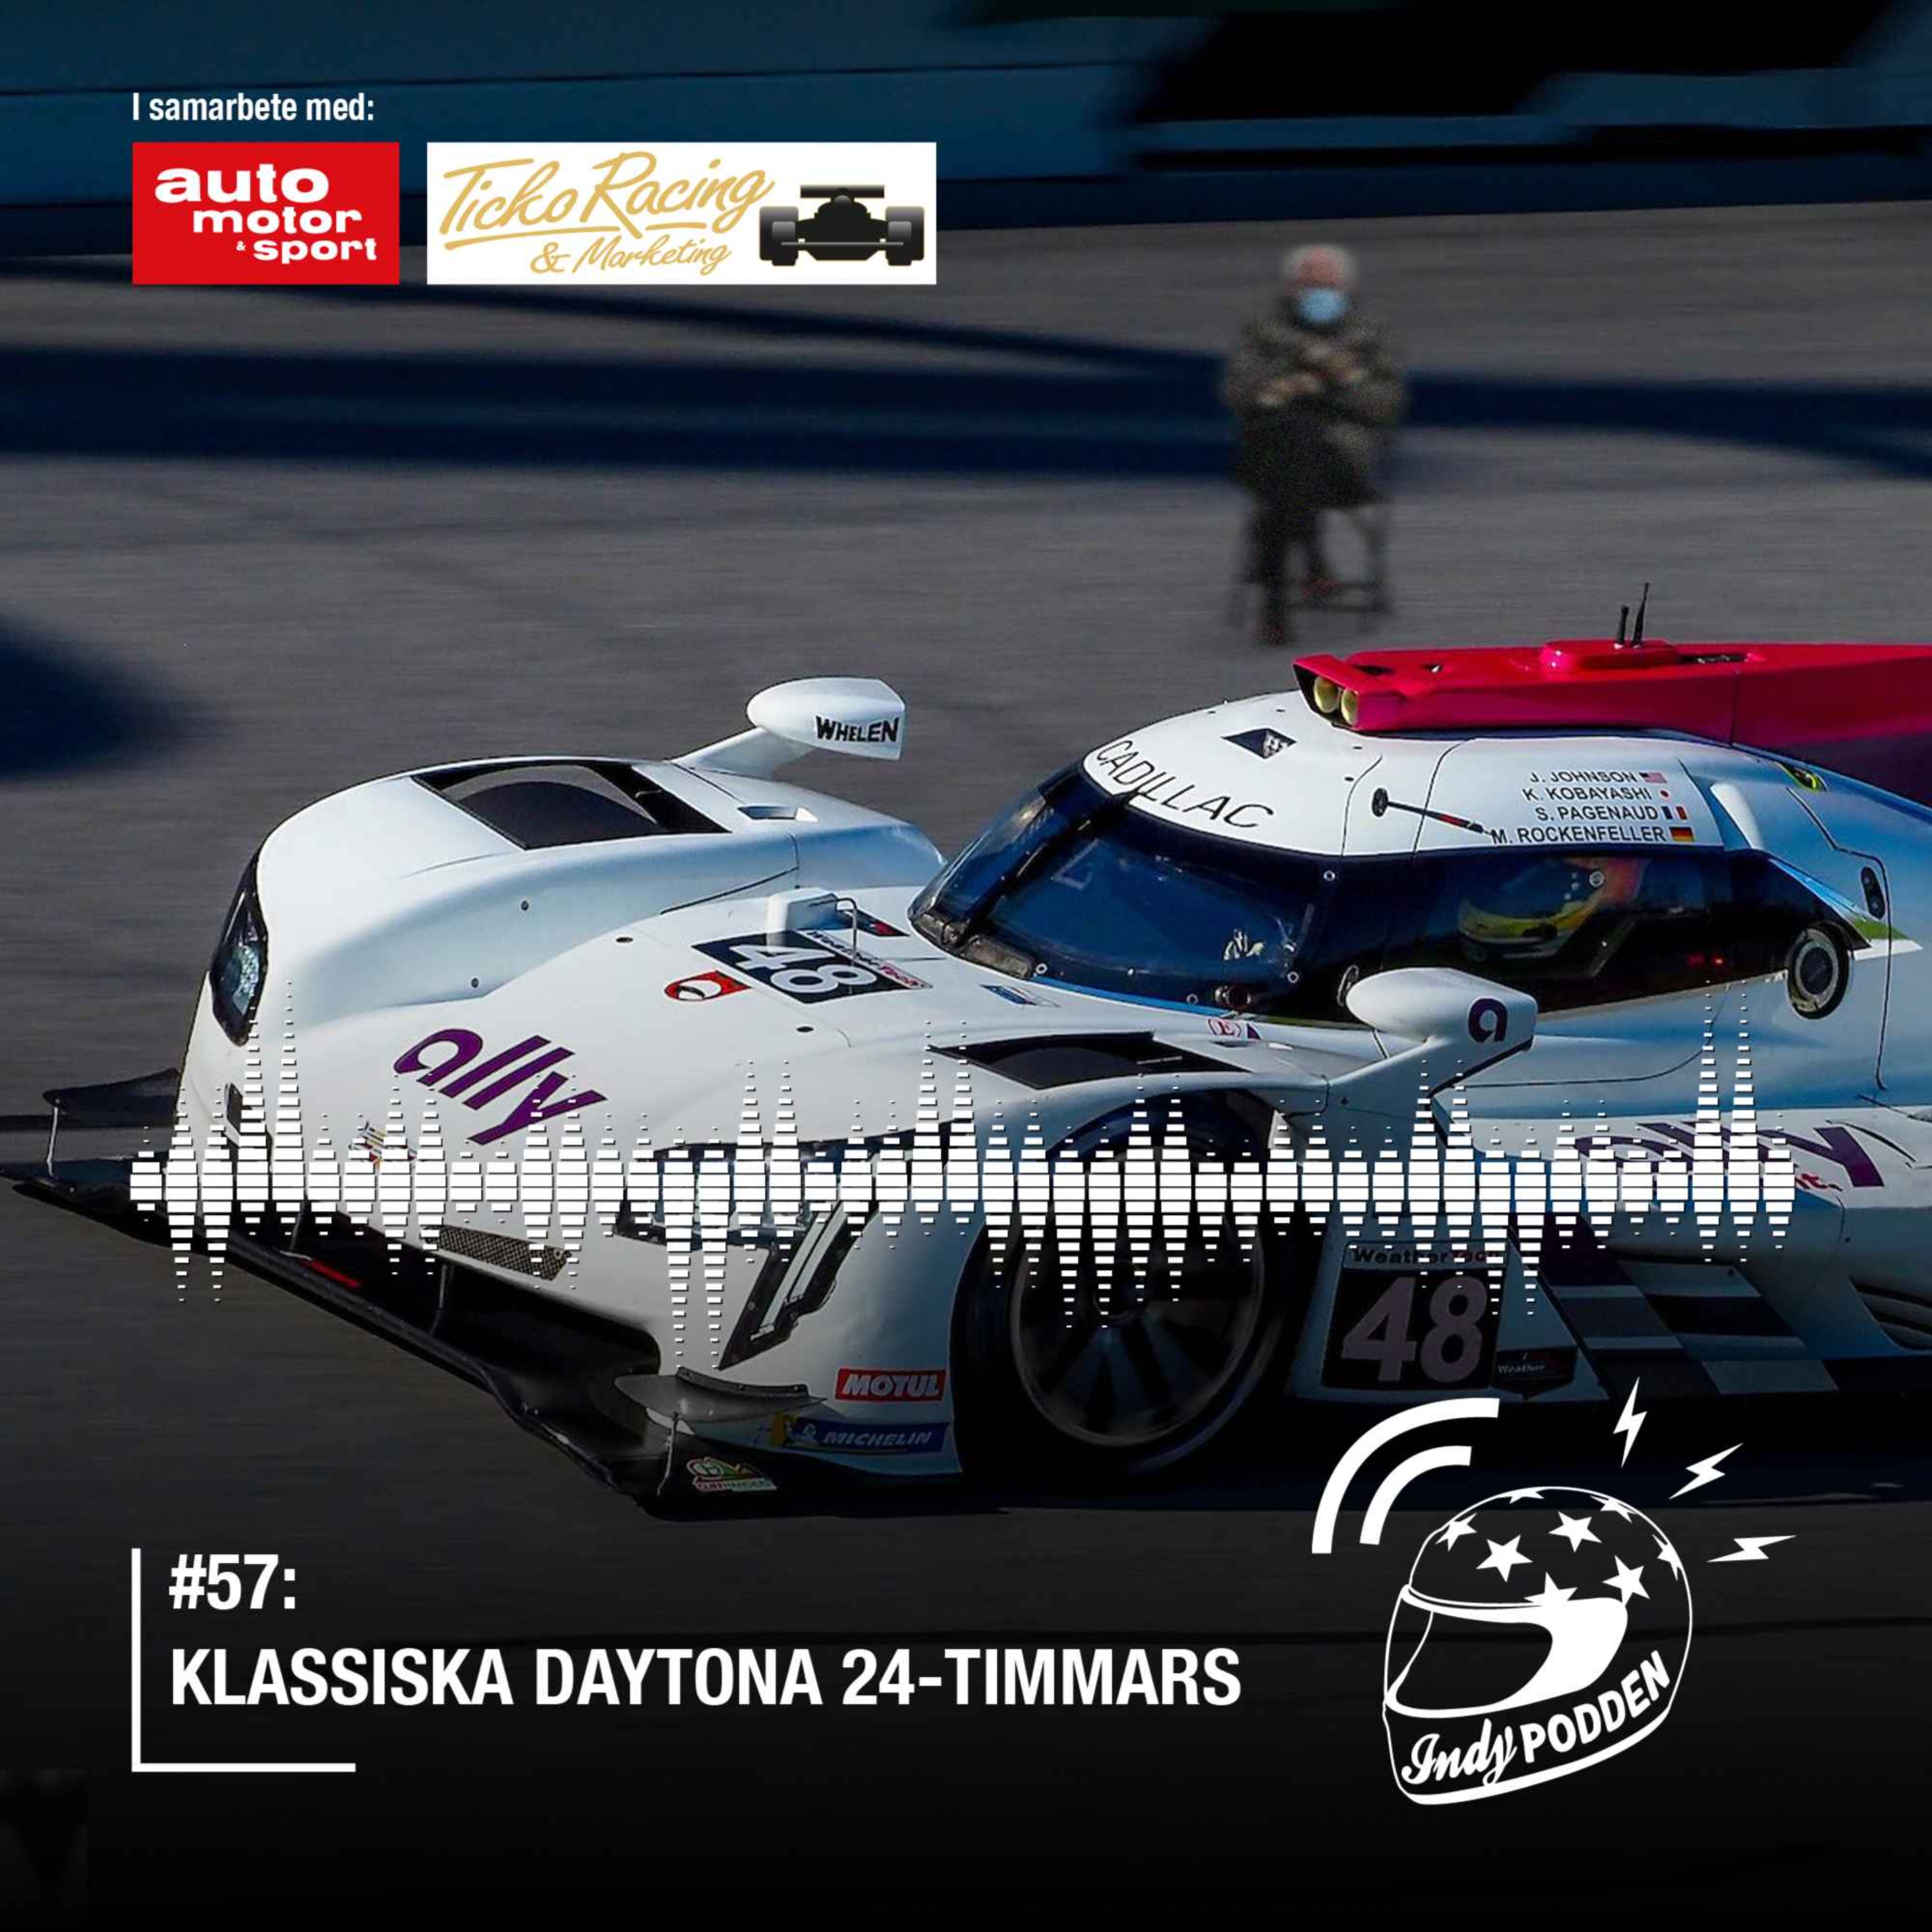 #57: Klassiska Daytona 24-timmars